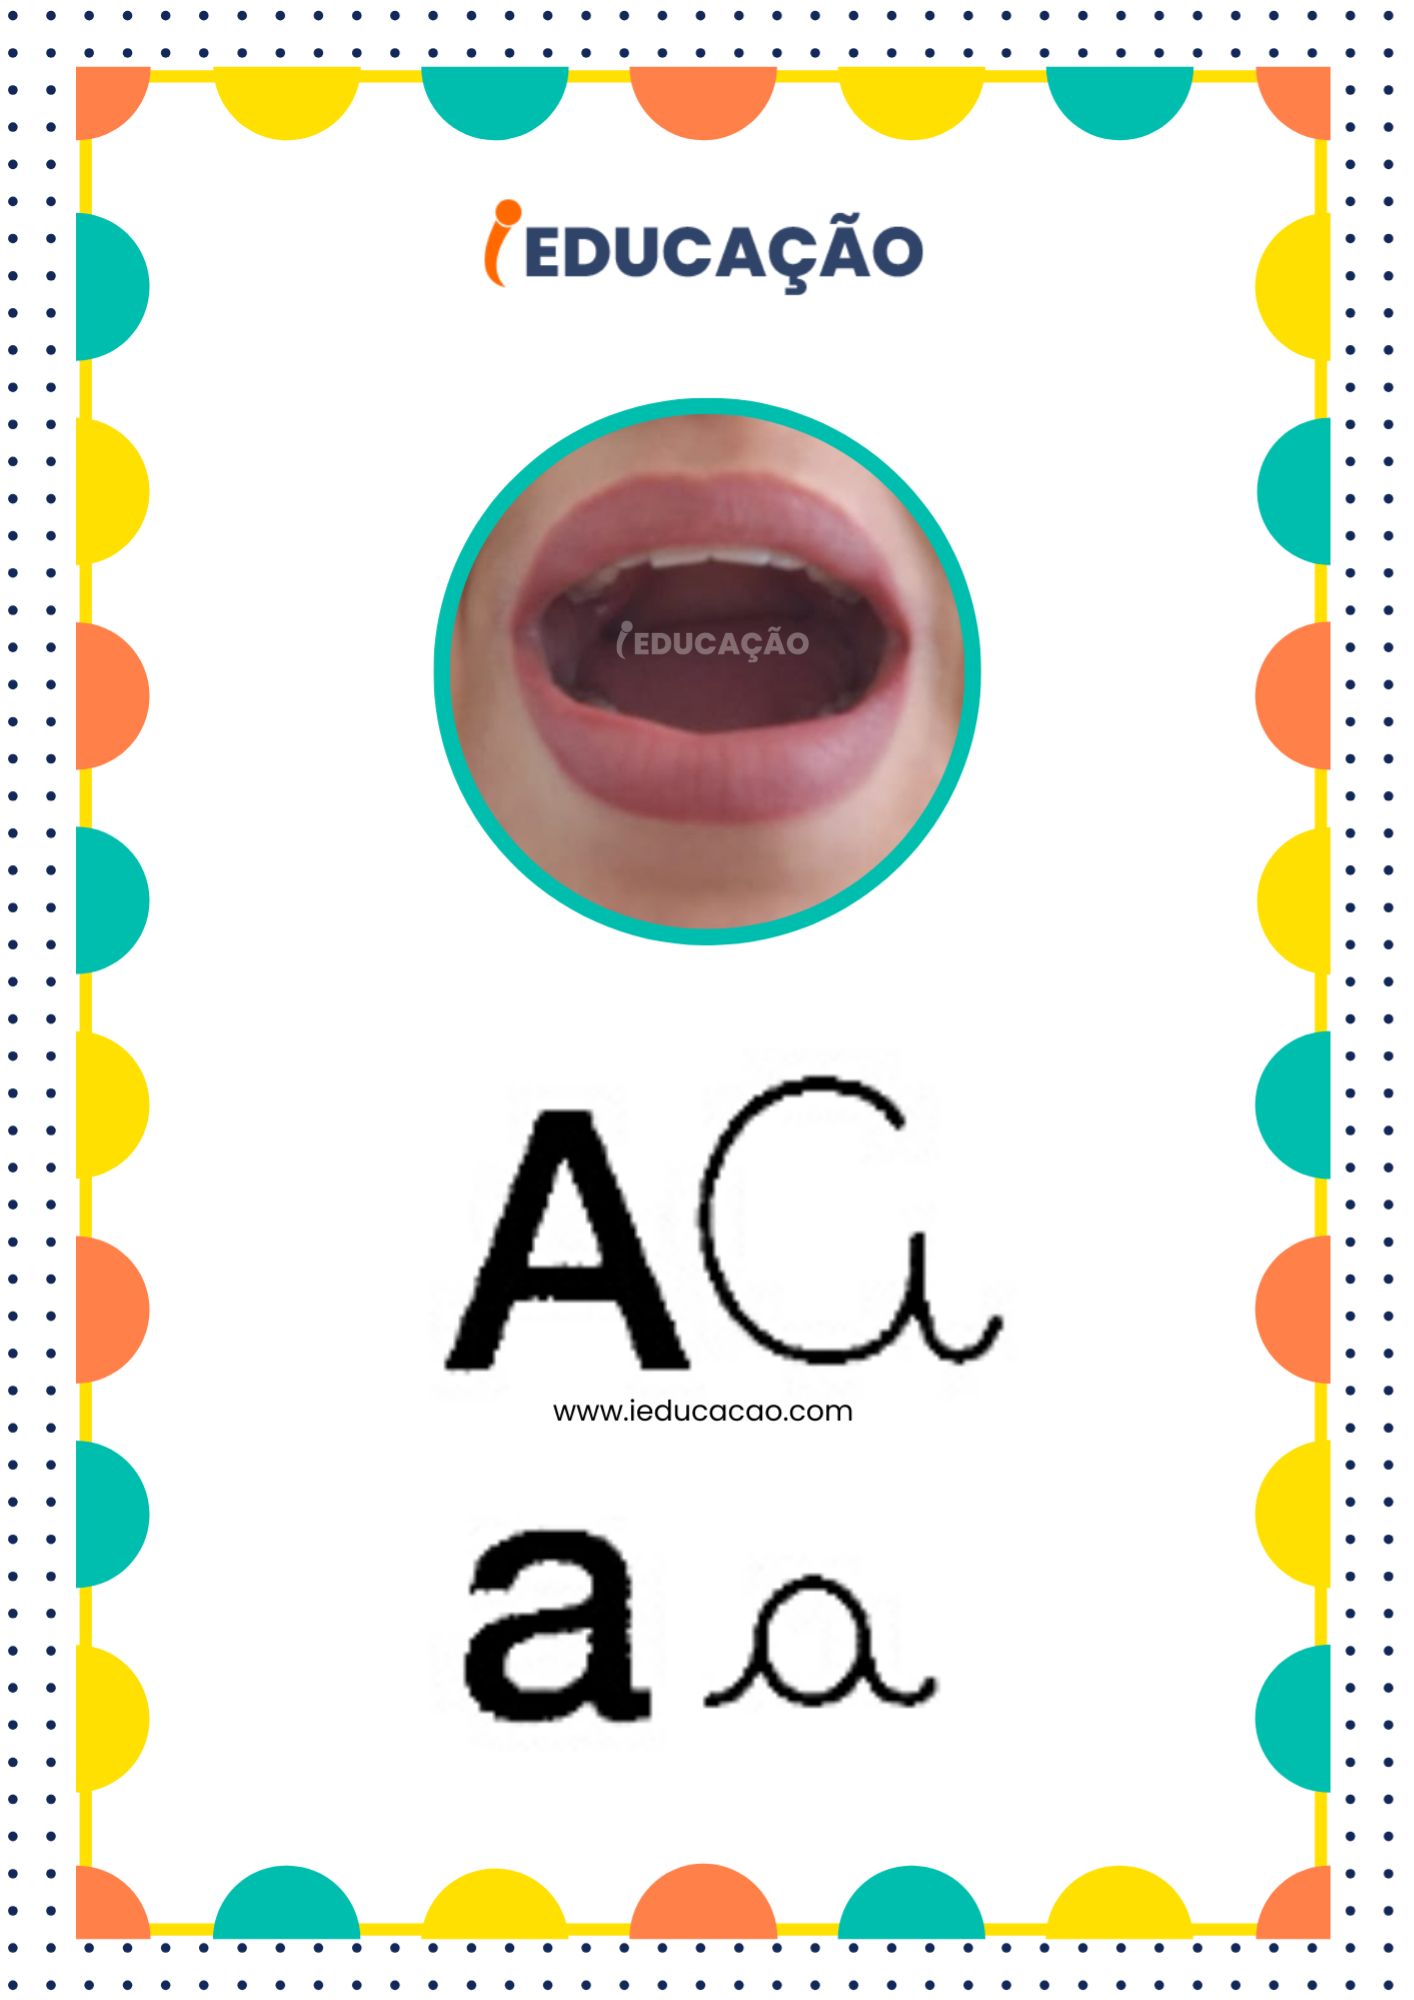 Letra A - Alfabeto Fônico com as letras do alfabeto - Consciência Fonológica